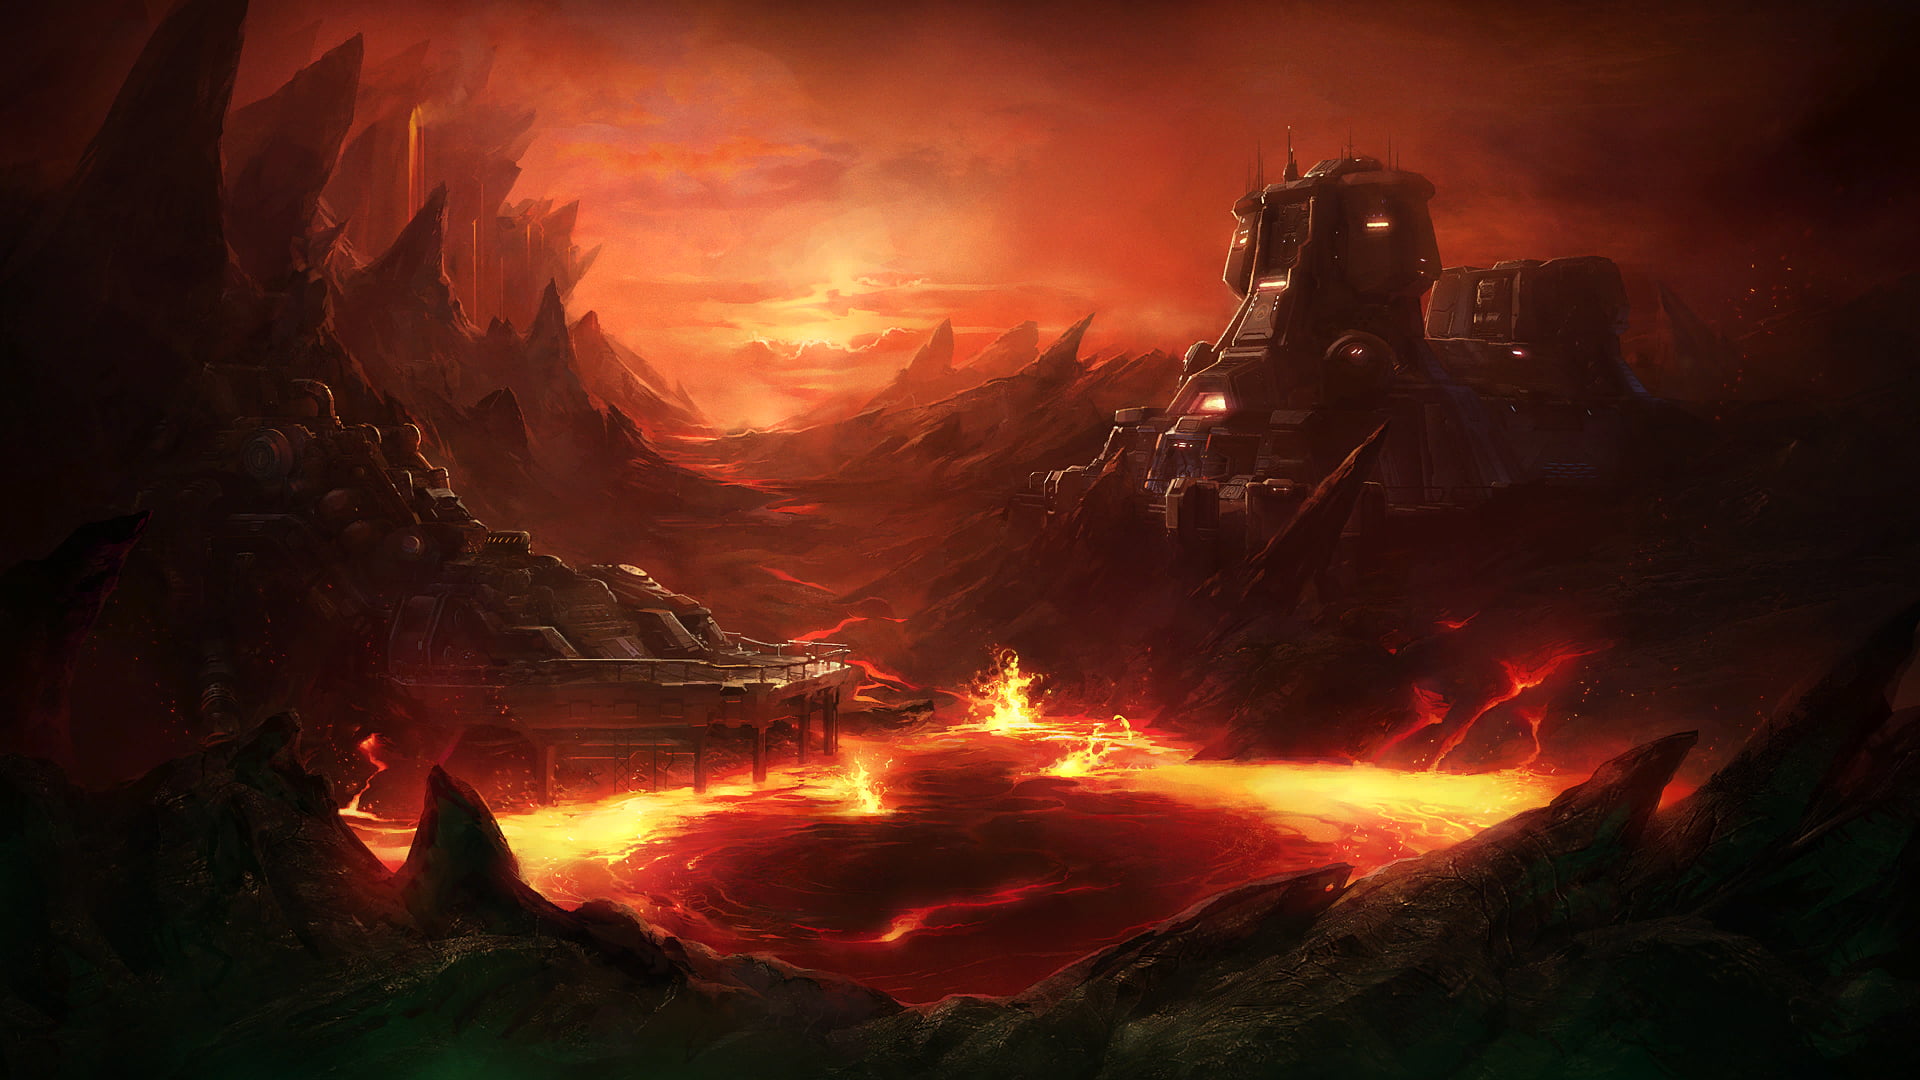 Những hình nền nhà gần núi lửa là một trải nghiệm đích thực cho những người yêu thích khám phá. Đặc biệt, với những fan của game Starcraft II và StarCraft, hình nền này sẽ trở thành một món đồ chơi tuyệt vời để thể hiện tình yêu và niềm đam mê của mình. Hãy xem ngay hình ảnh liên quan đến từ khoá này để trải nghiệm sự kết hợp độc đáo giữa game và thiên nhiên.